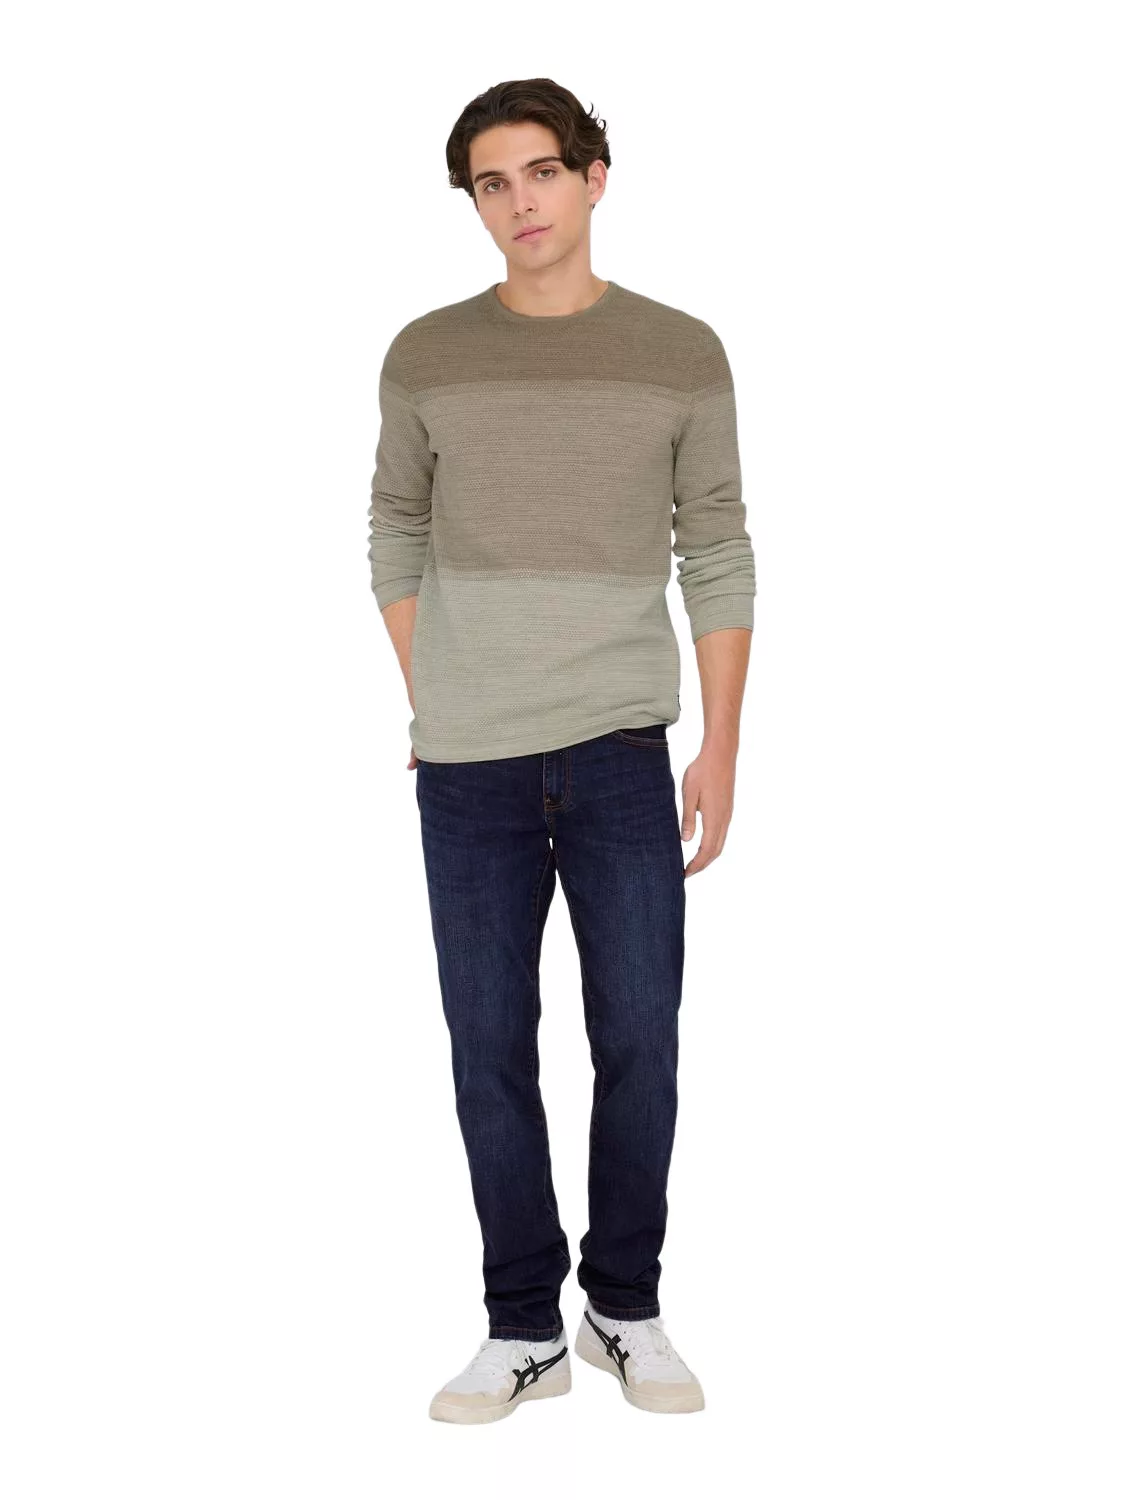 Only & Sons Herren Jeans ONSWEFT REG 6752 - Straight Fit - Blau - Dark Blue günstig online kaufen